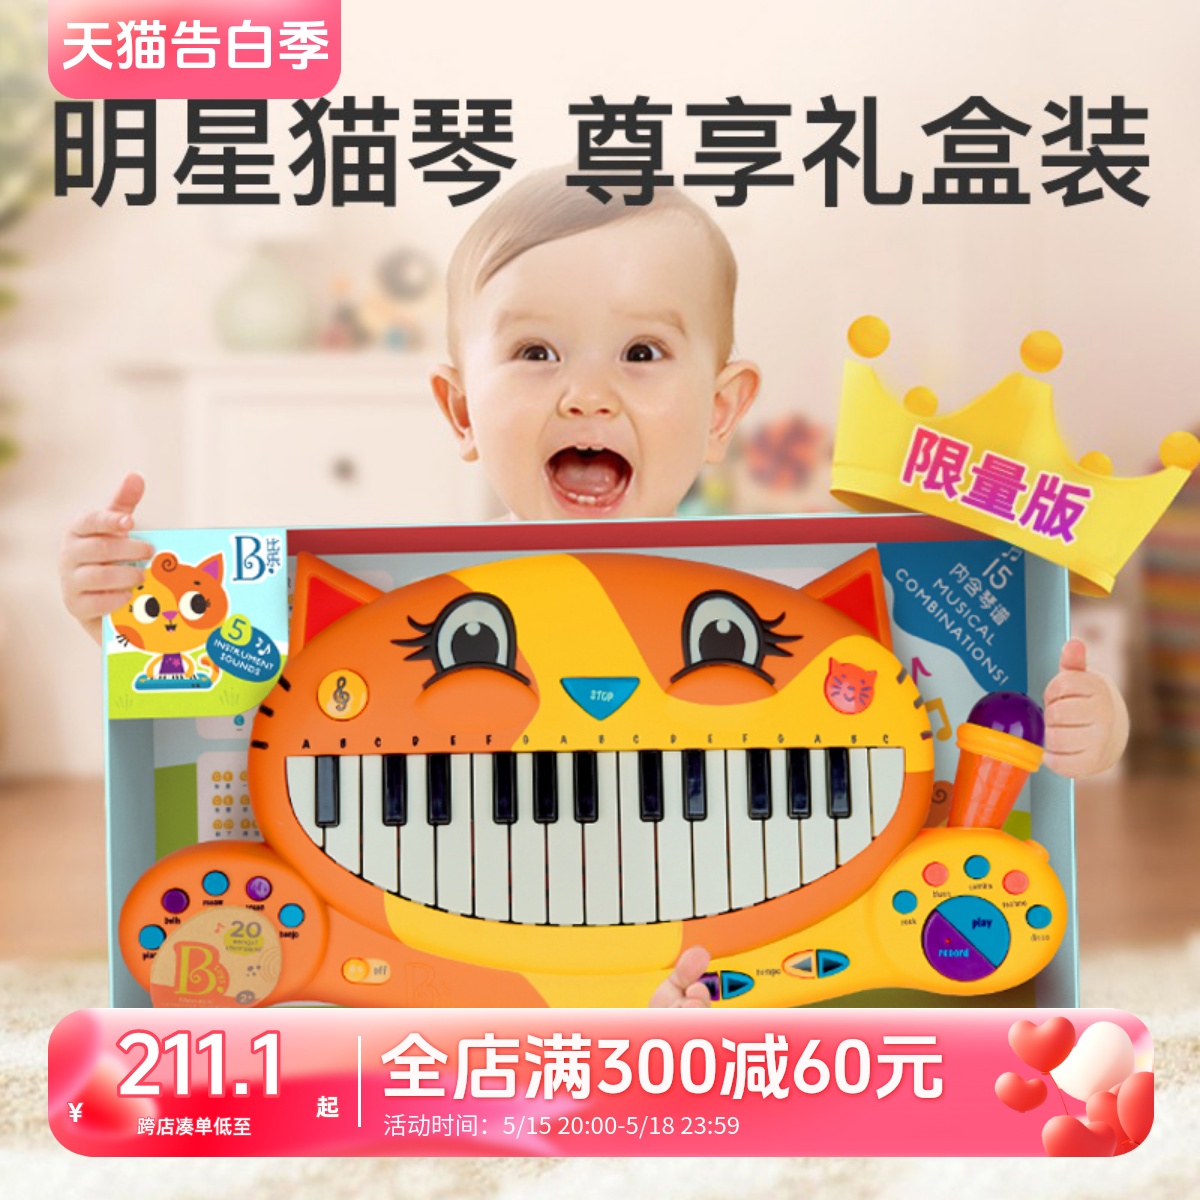 比乐btoys宝宝大嘴猫琴乐器婴儿启蒙电子琴儿童初学钢琴玩具